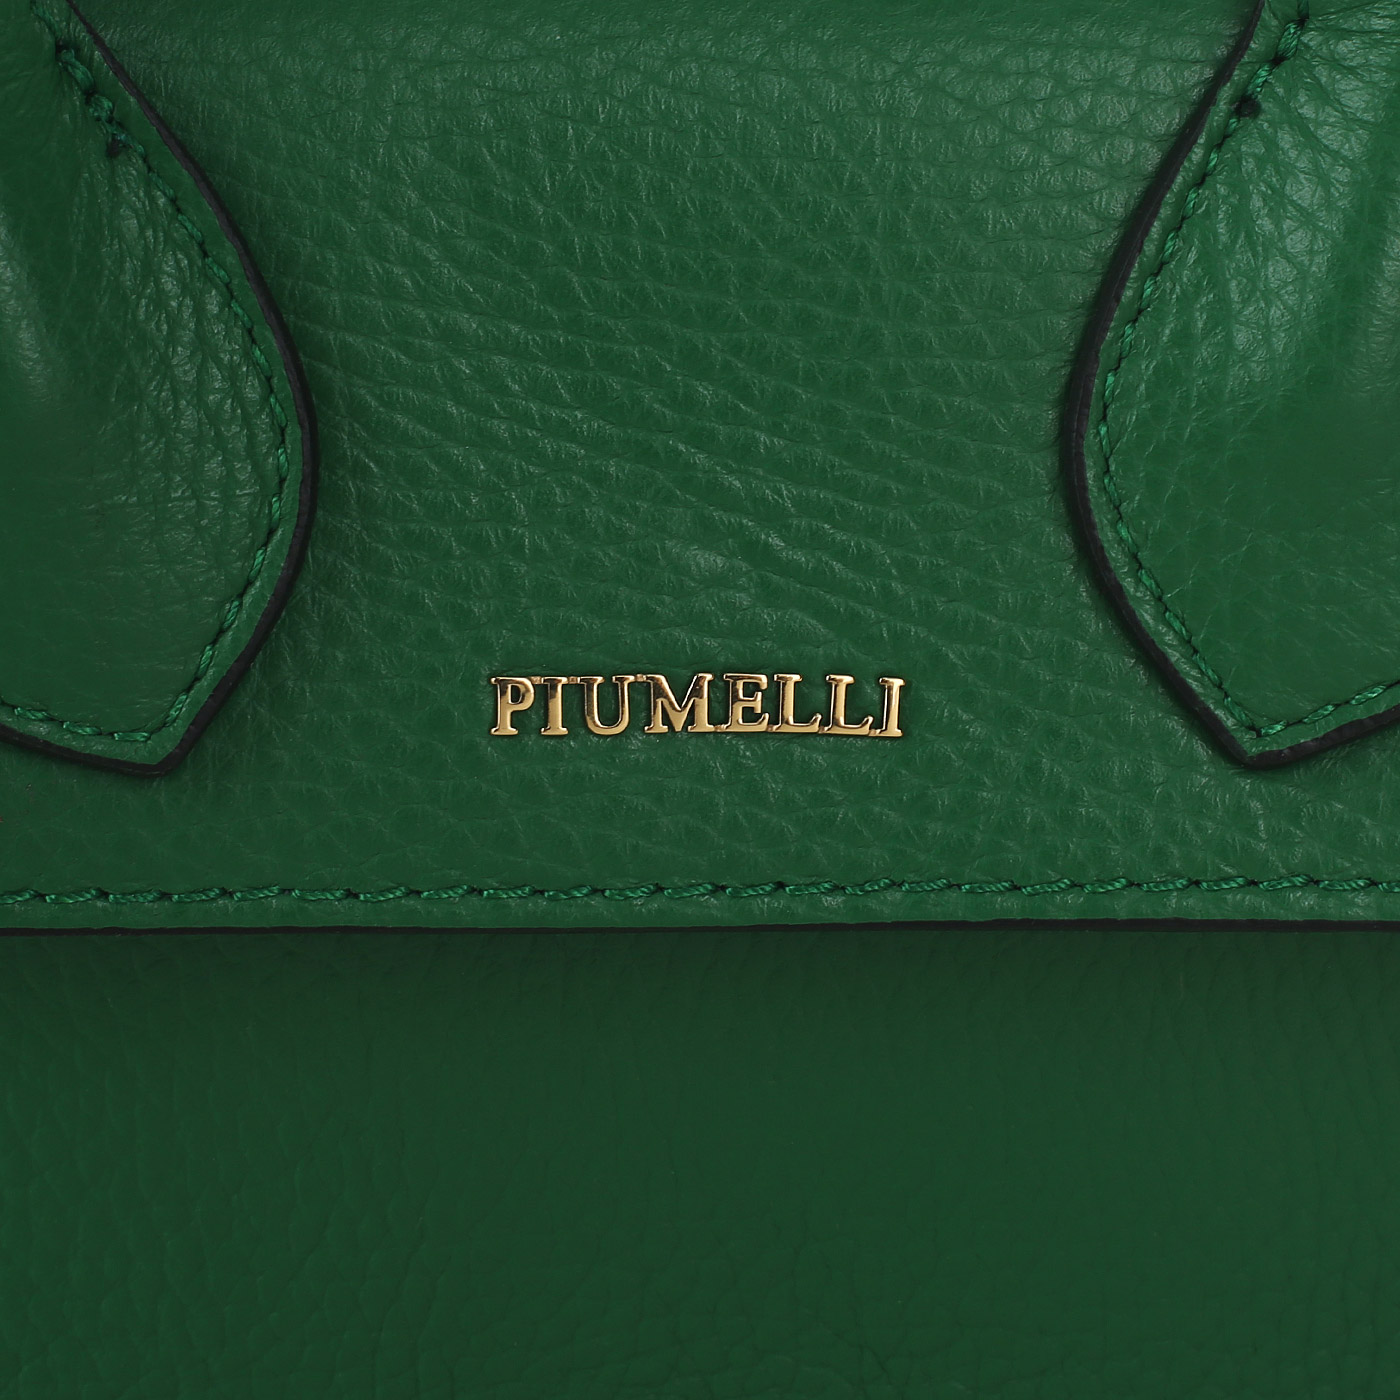 Кожаная сумка Piumelli Love